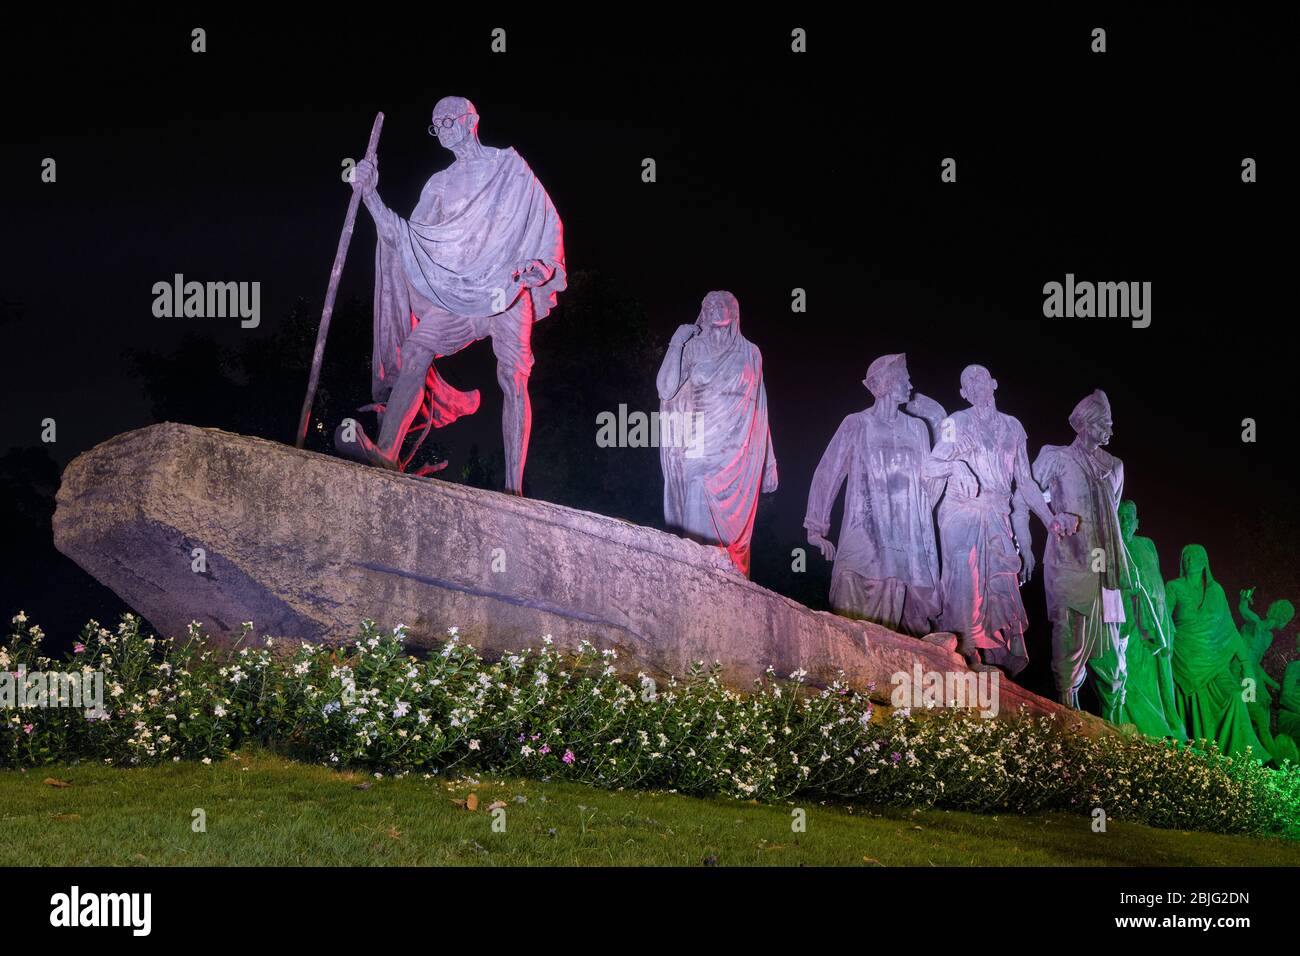 Nueva Delhi / India - 16 de septiembre de 2019: La estatua de marcha Dandi se iluminó por la noche, conmemorando la marcha de la SAL de 1930, con Gandhi y sus seguidores i Foto de stock